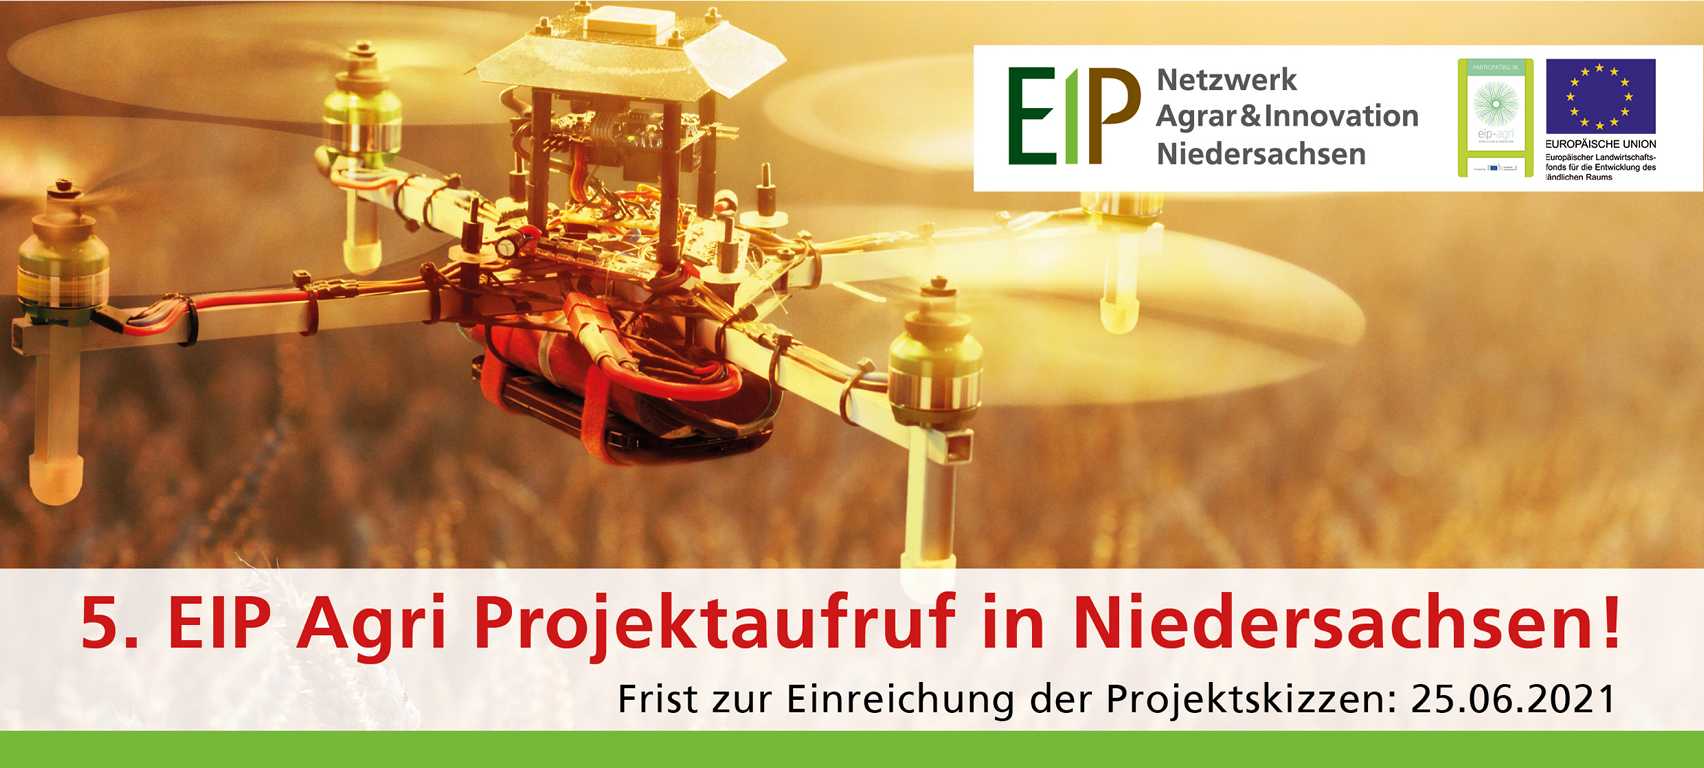 5. EIP Agri Projektaufruf in Niedersachsen